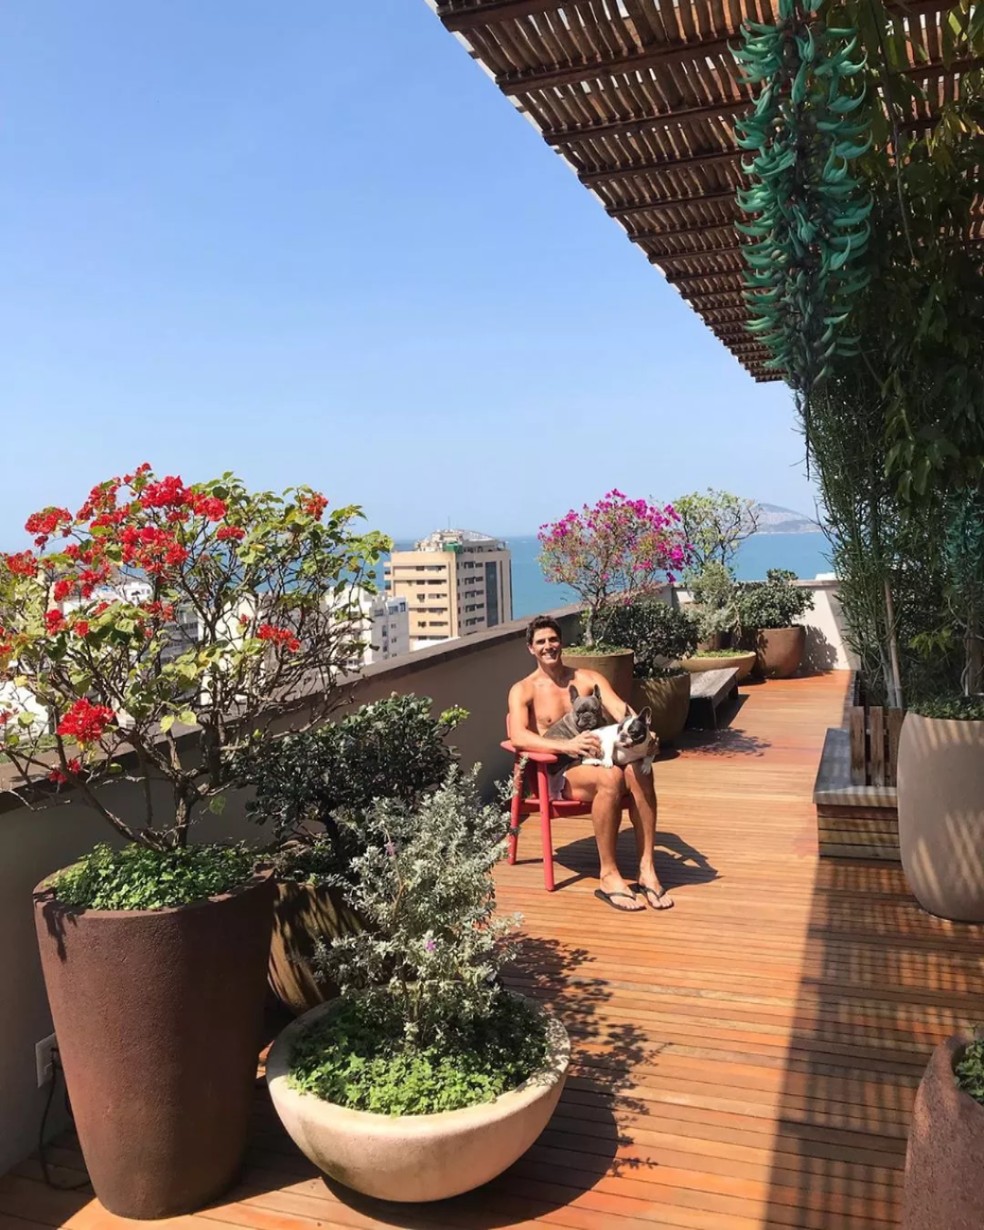 Apartamento luxuoso de Reynaldo Gianecchini no Rio de Janeiro — Foto: Reprodução Instagram